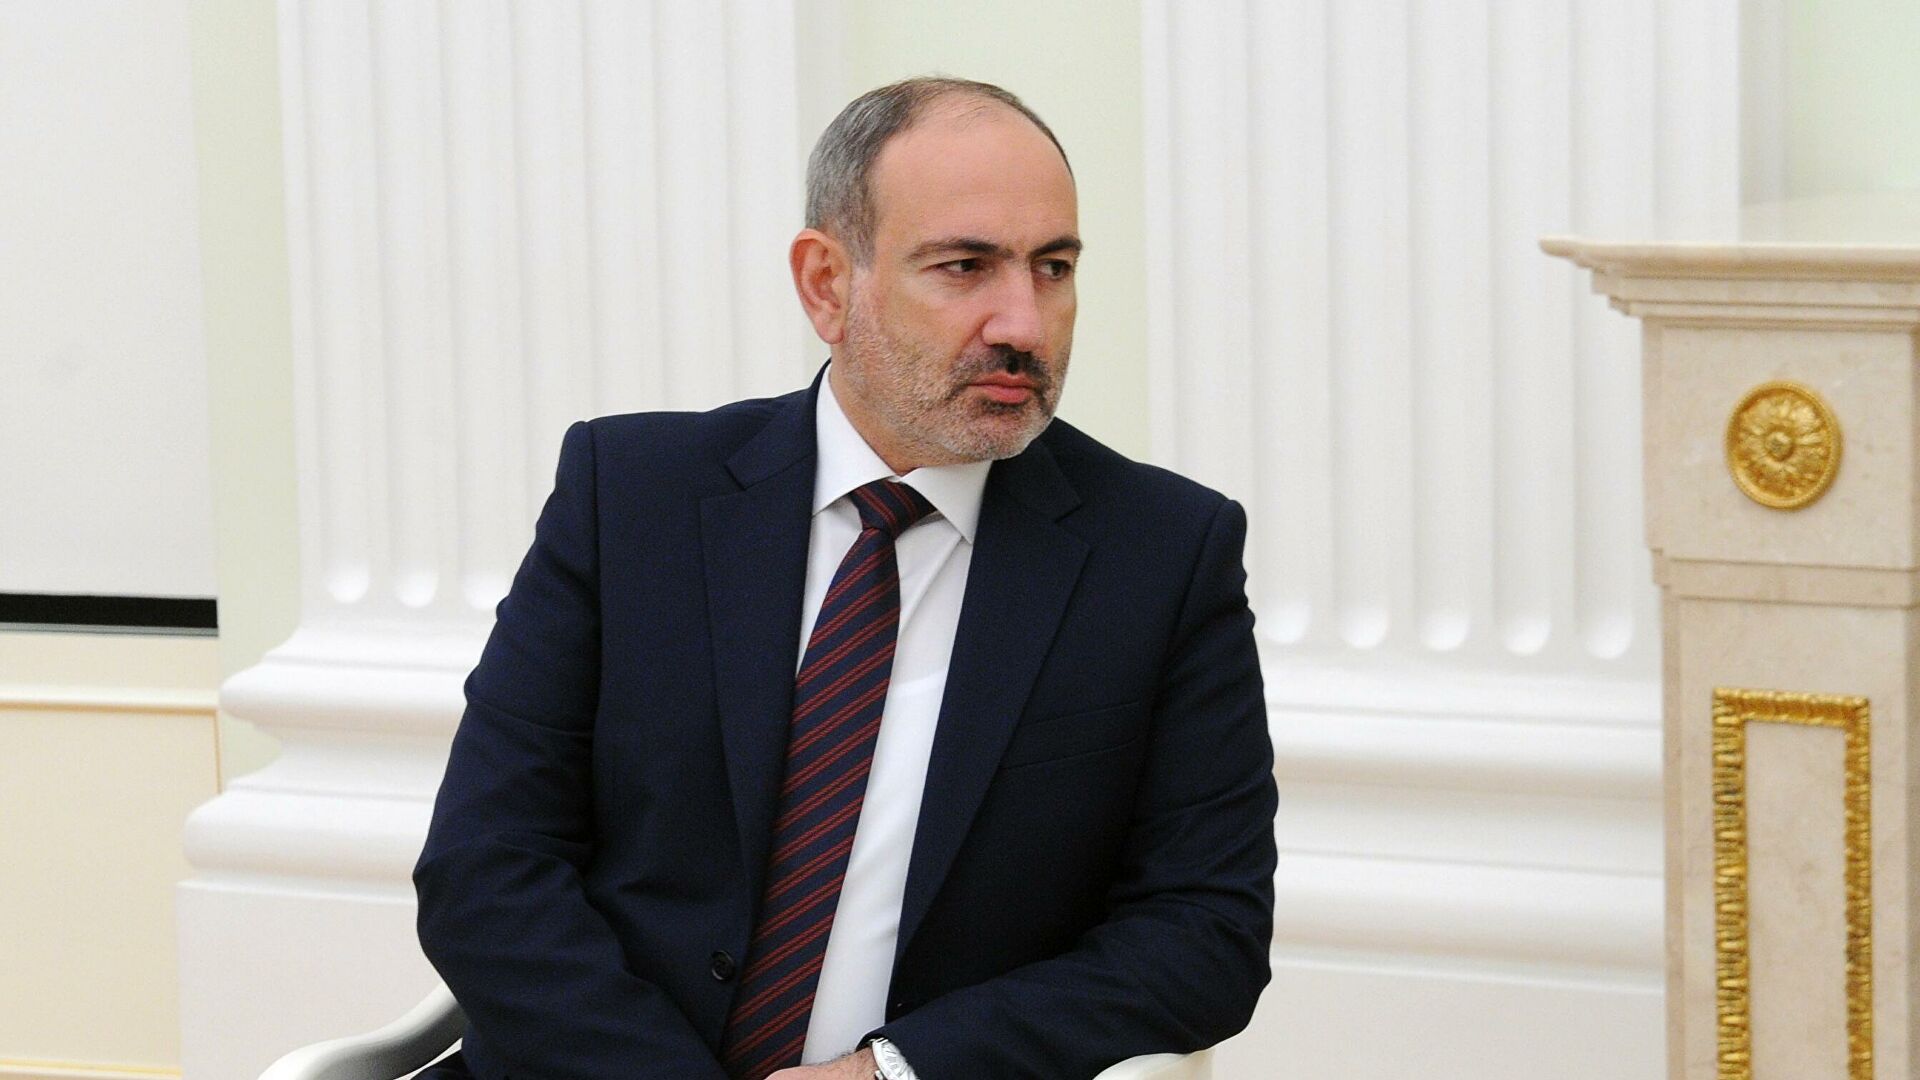 Глава Генерального штаба Армении отстранен